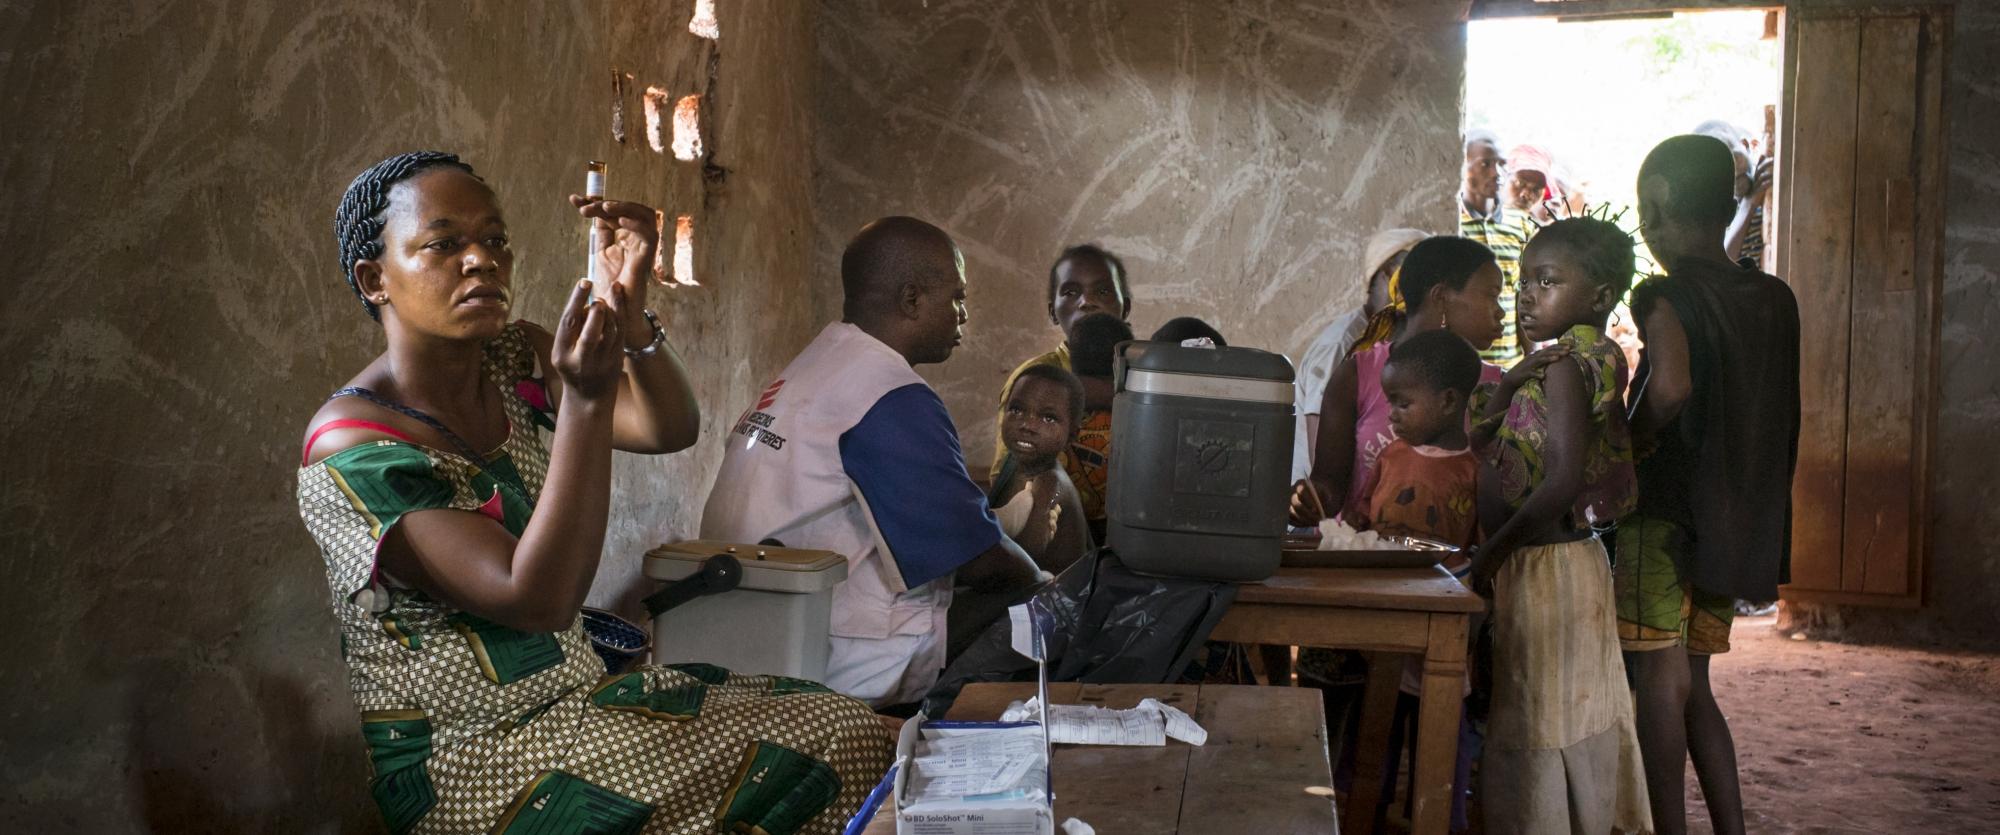 Les enfants attendent d'être vaccinés contre la rougeole le premier jour de la campagne de vaccination. Kolo, Province du Bas-Uele, République démocratique du Congo.